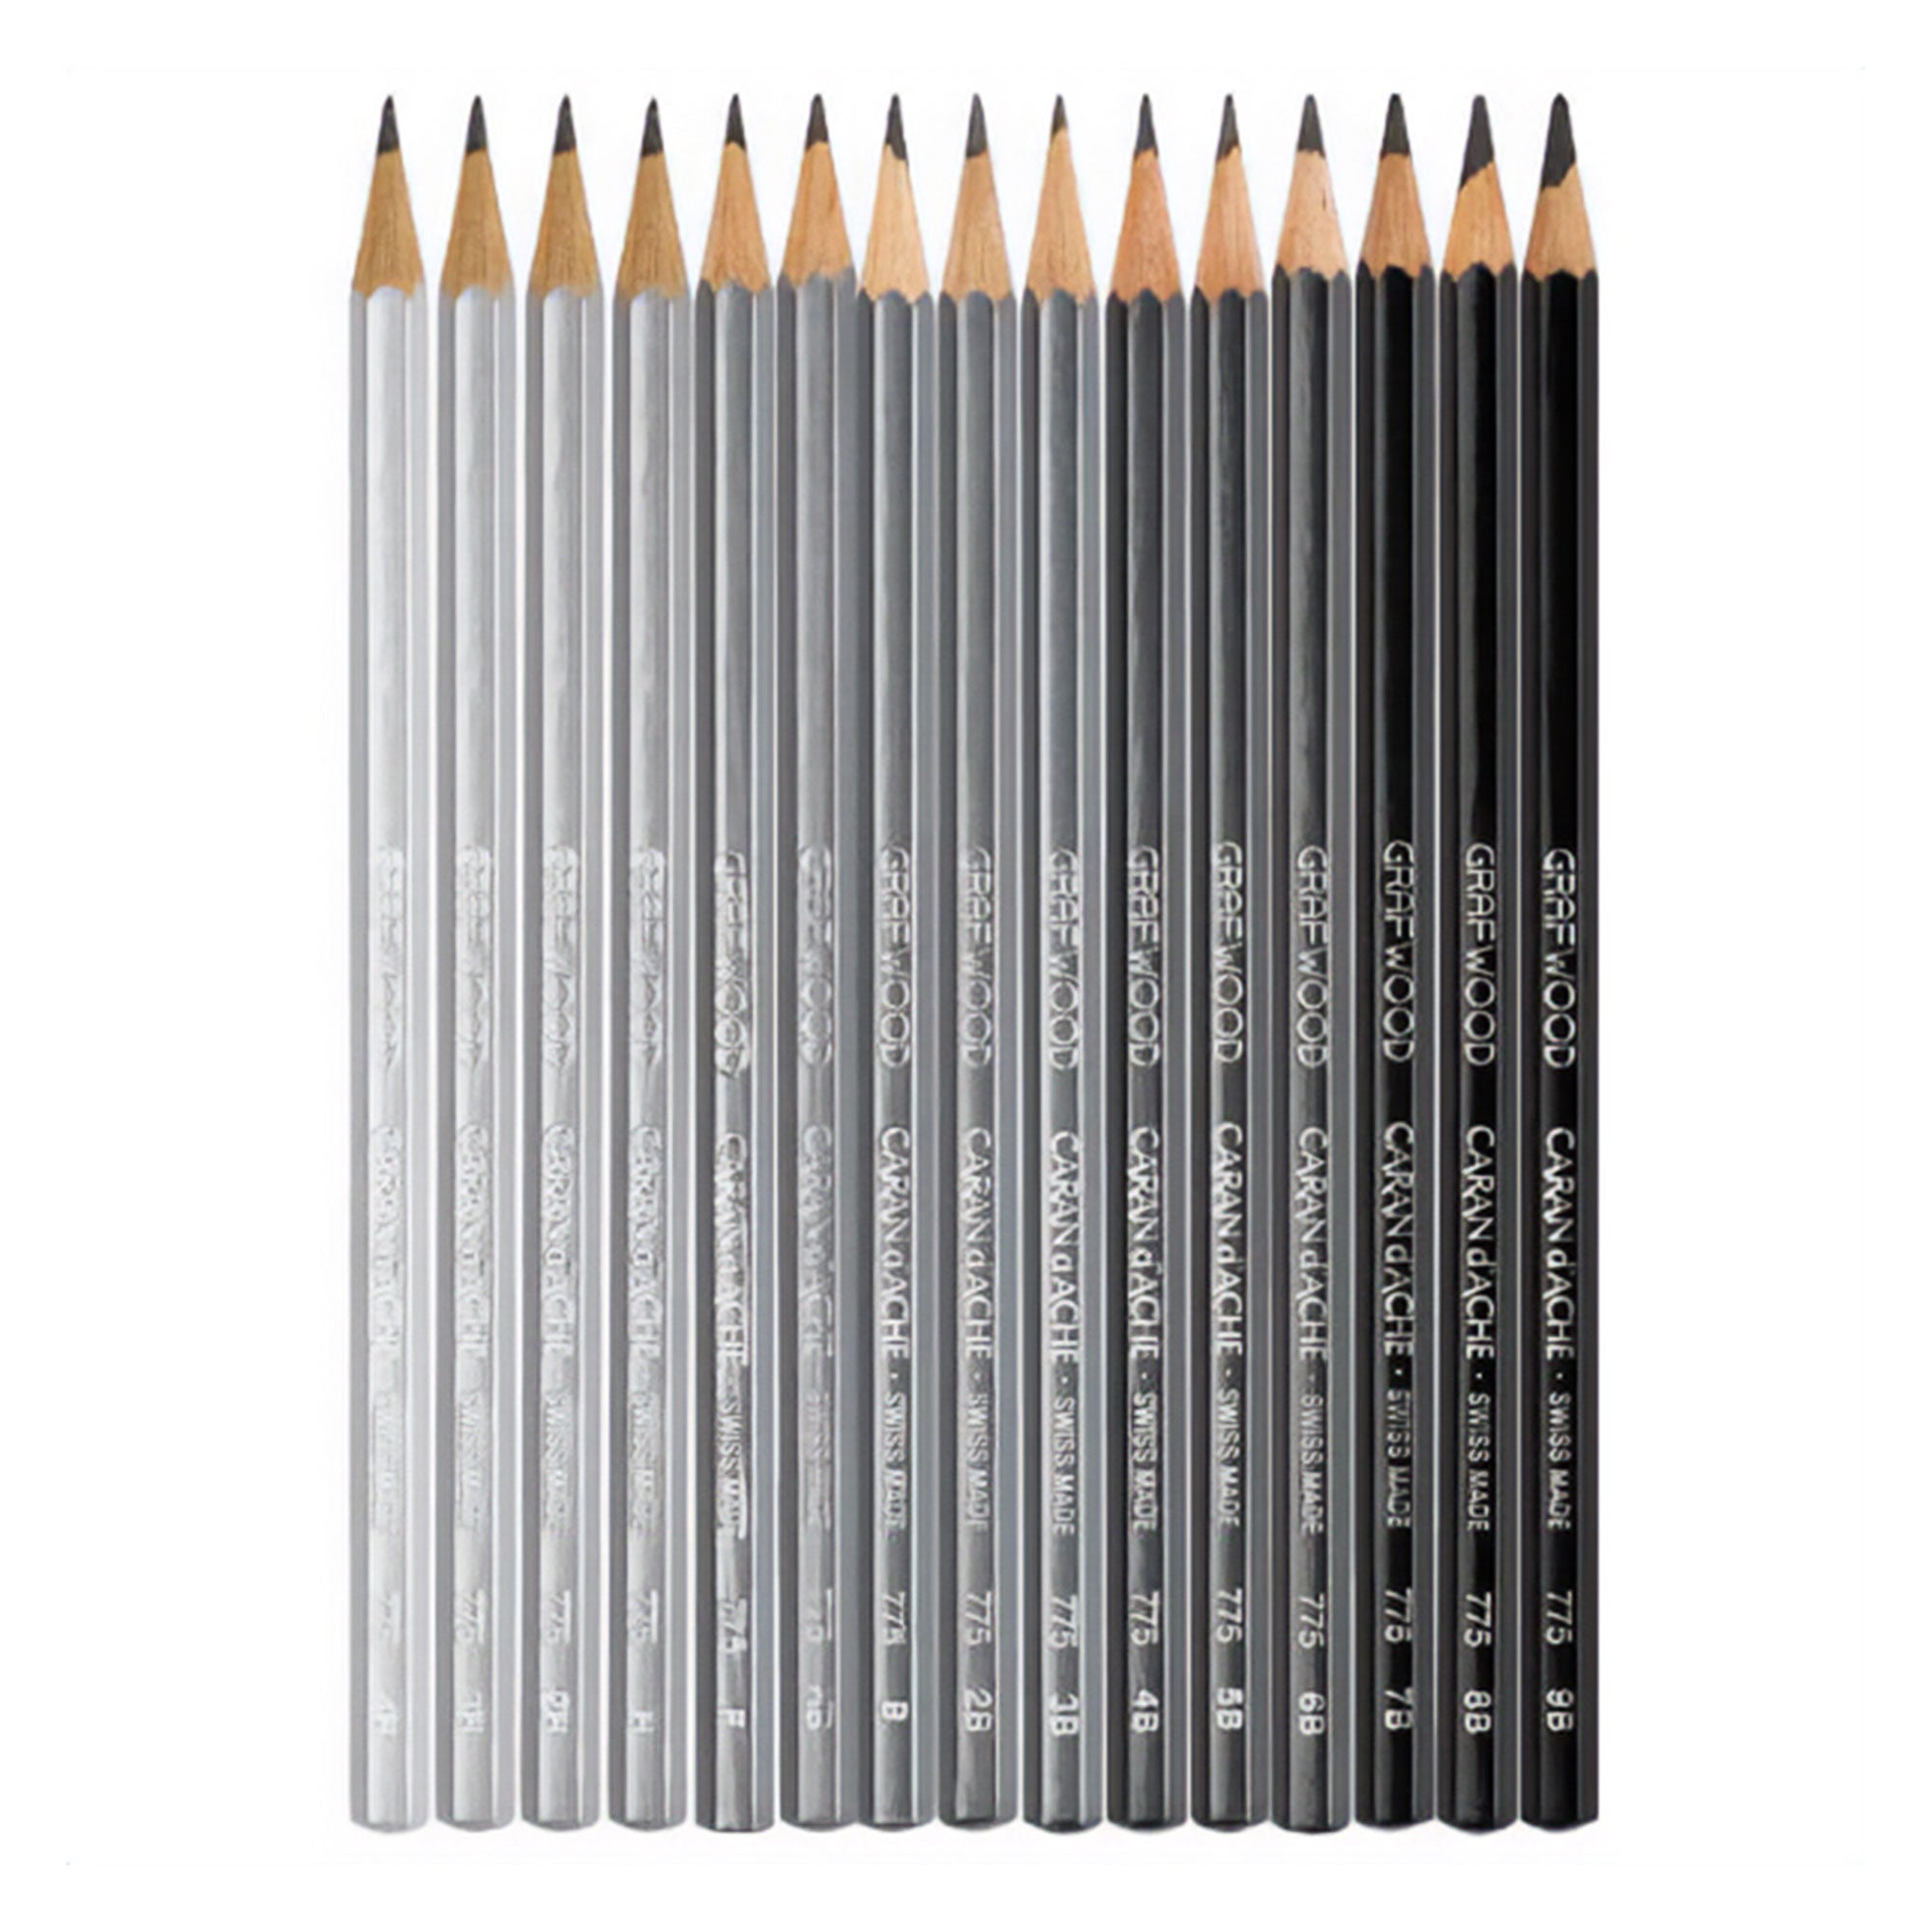 Caran d'Ache Grafwood Graphite Pencil - All tones